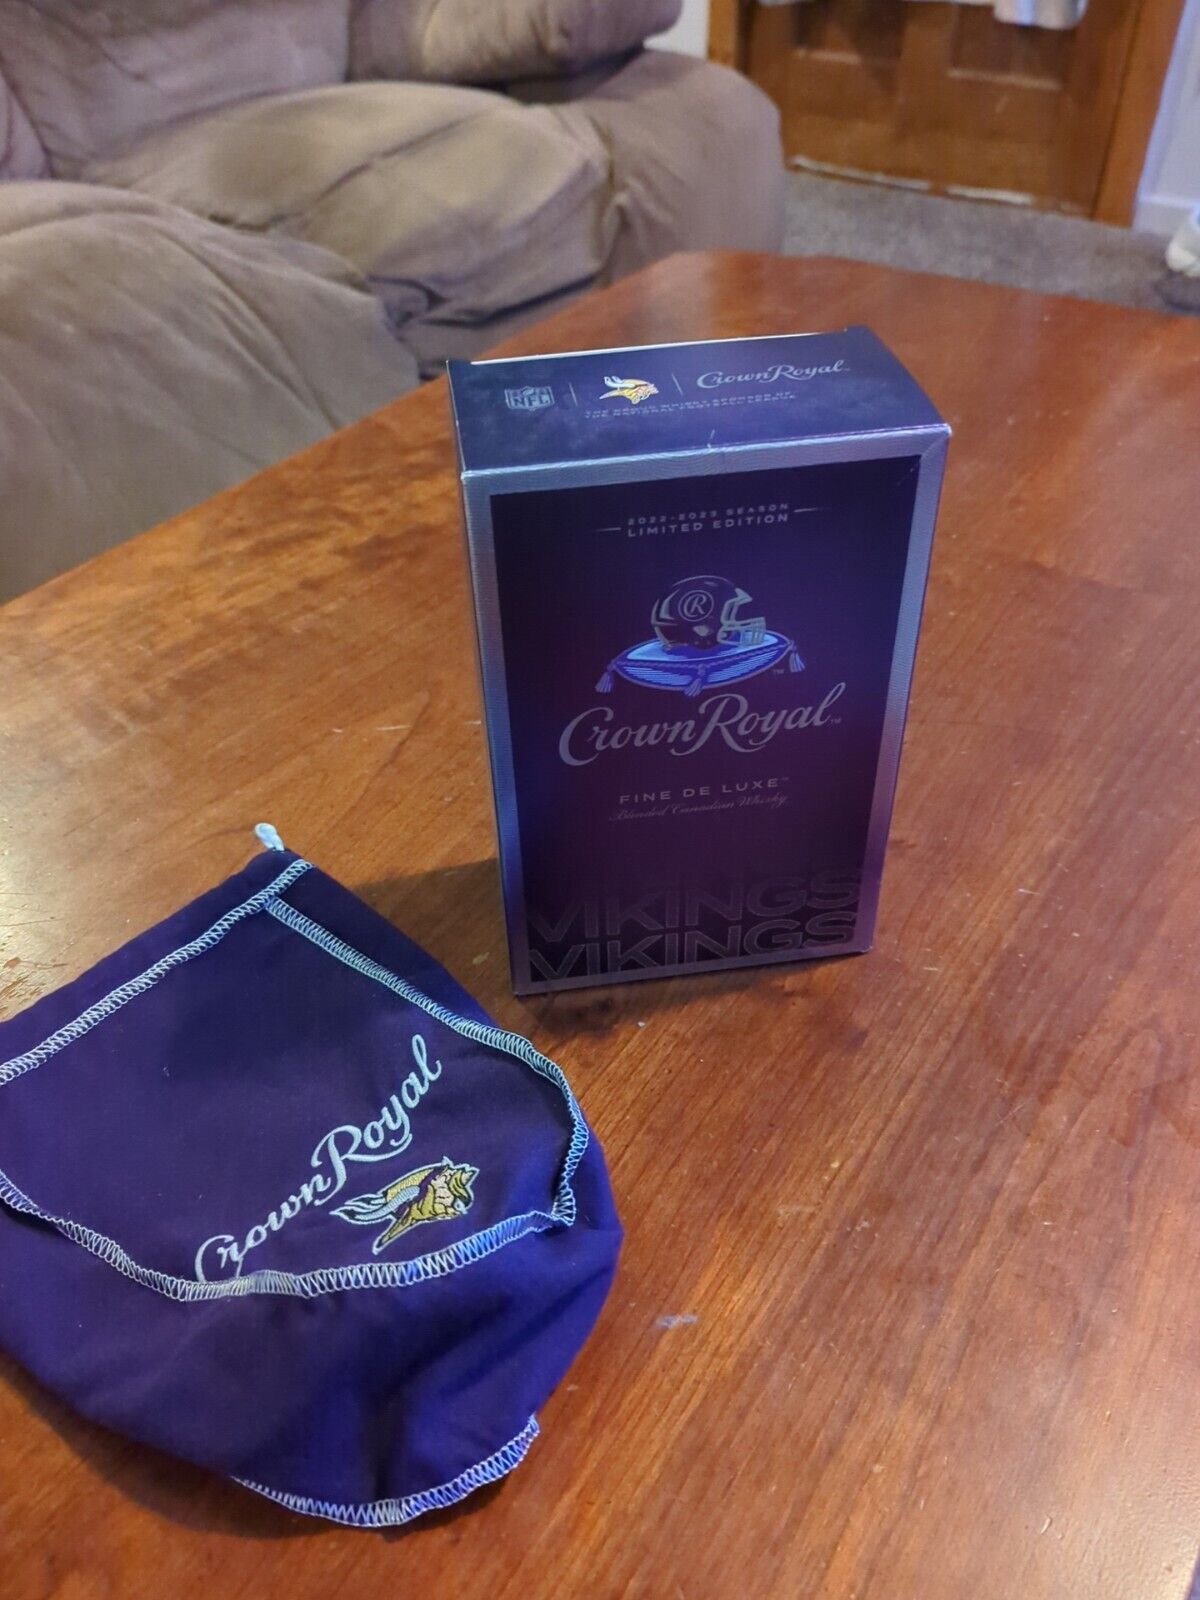 Vikings Crown Royal Bag And Box 2022-2023 Limited Edition 750ml Box